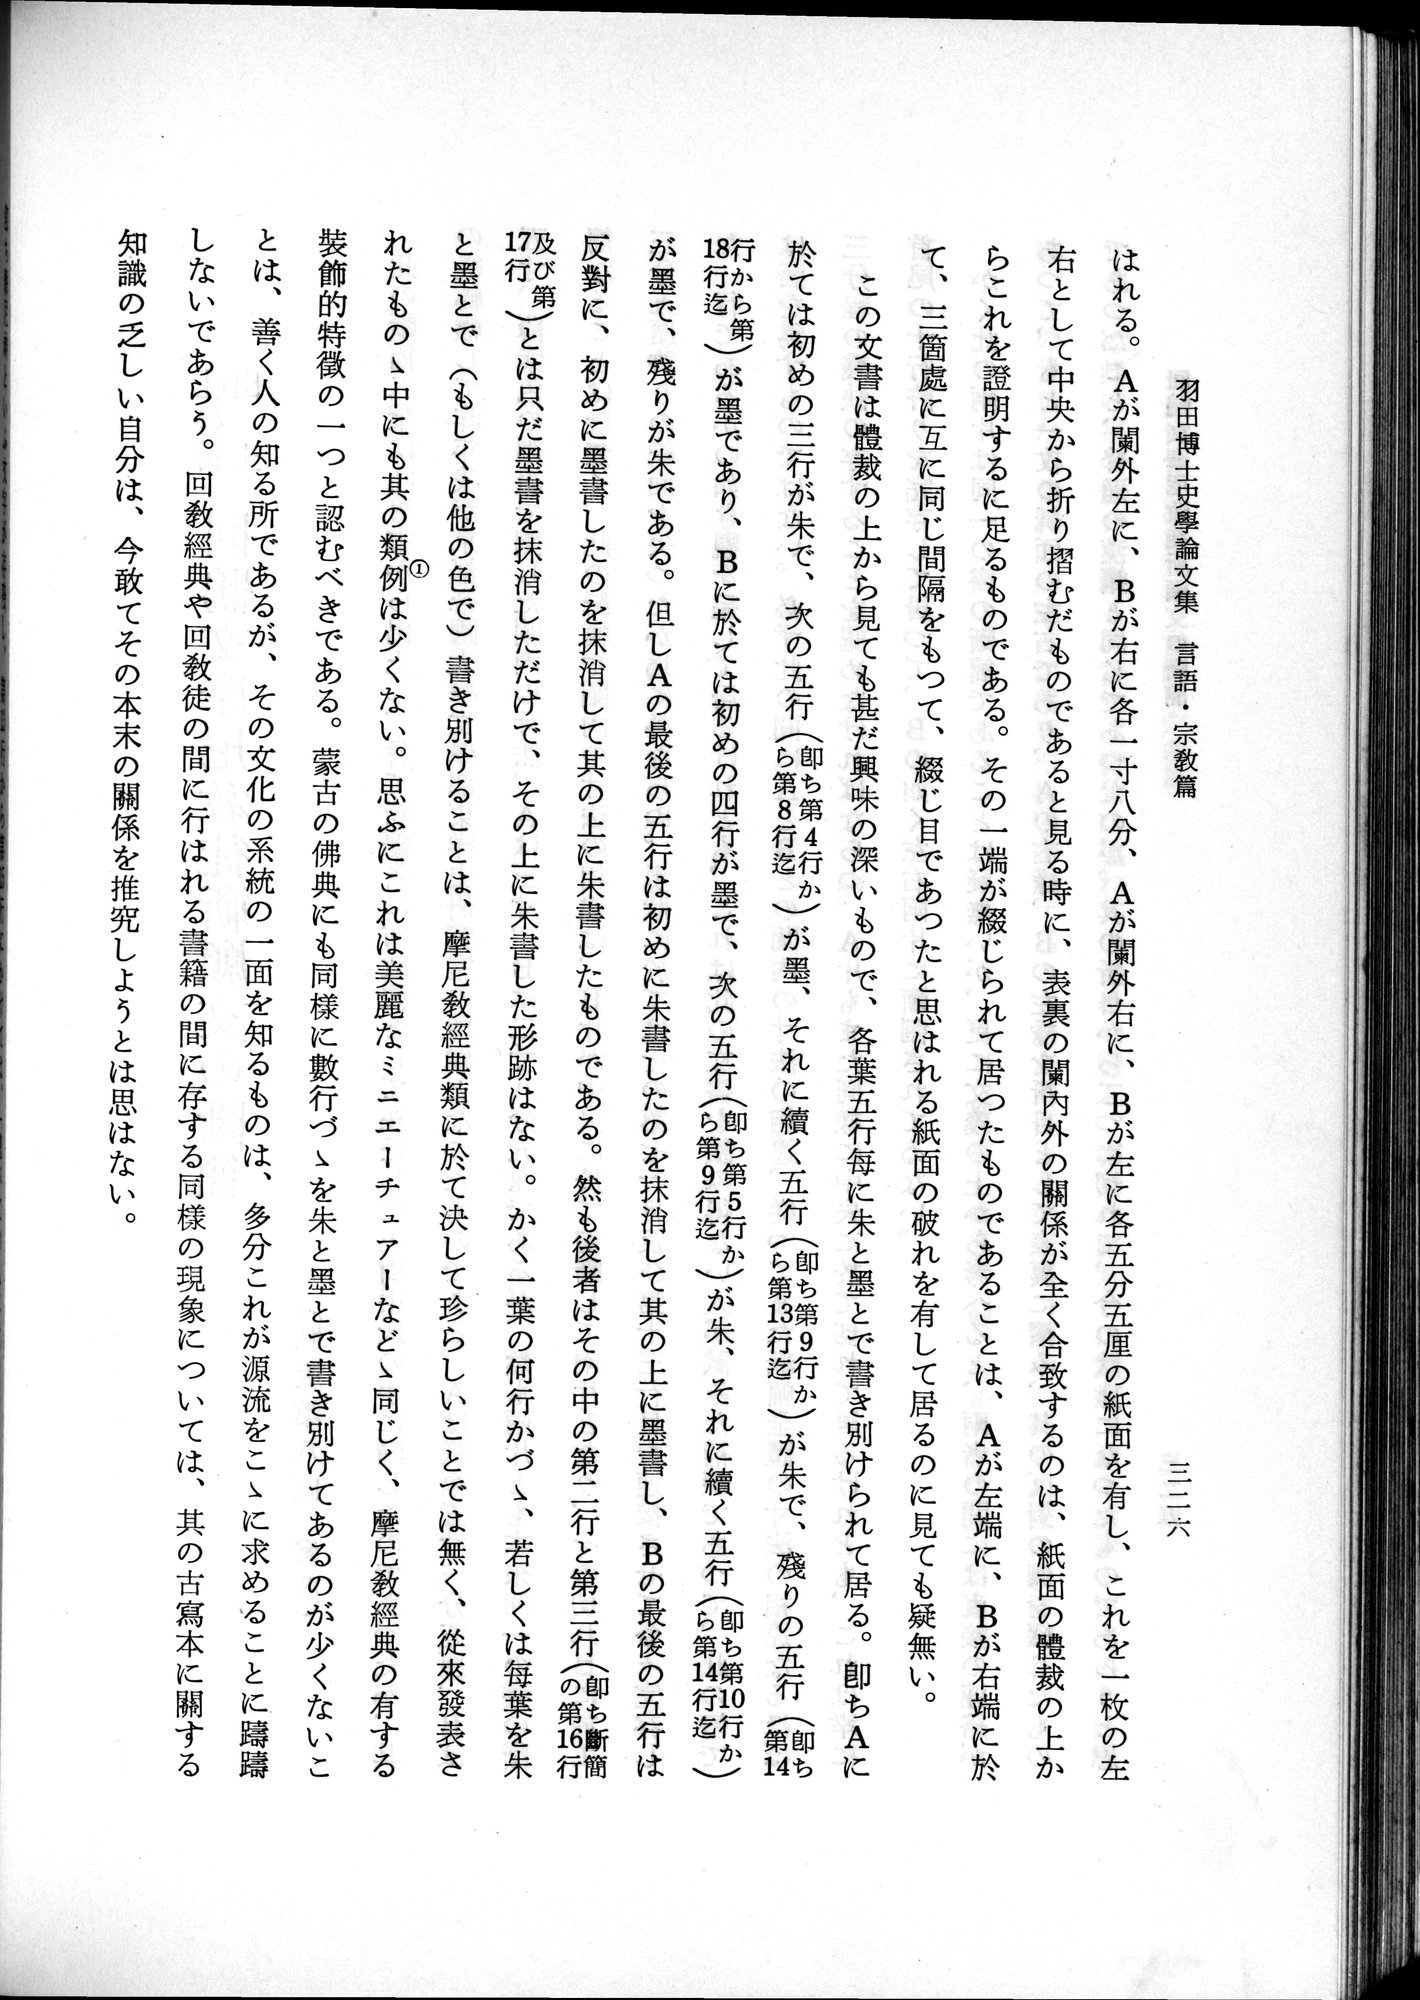 羽田博士史学論文集 : vol.2 / Page 388 (Grayscale High Resolution Image)